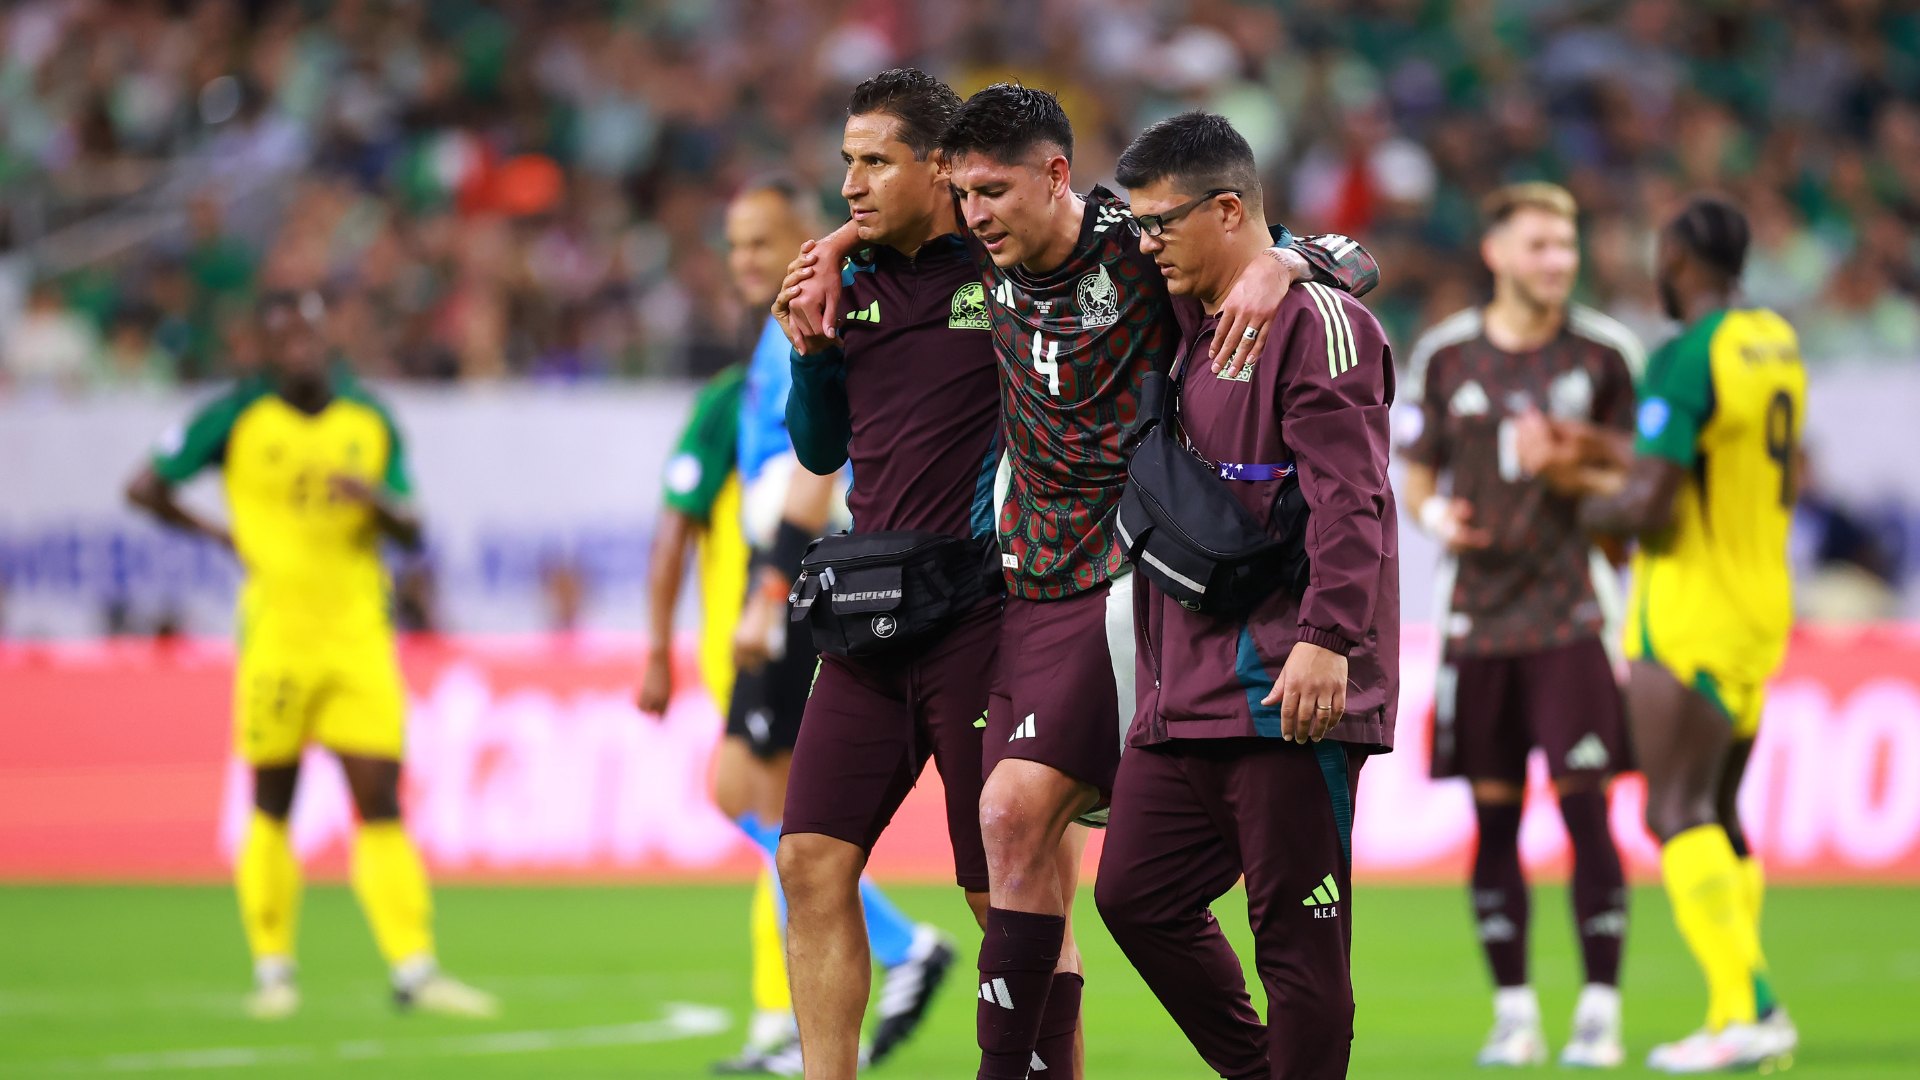 Alvarez injury sours Mexico win